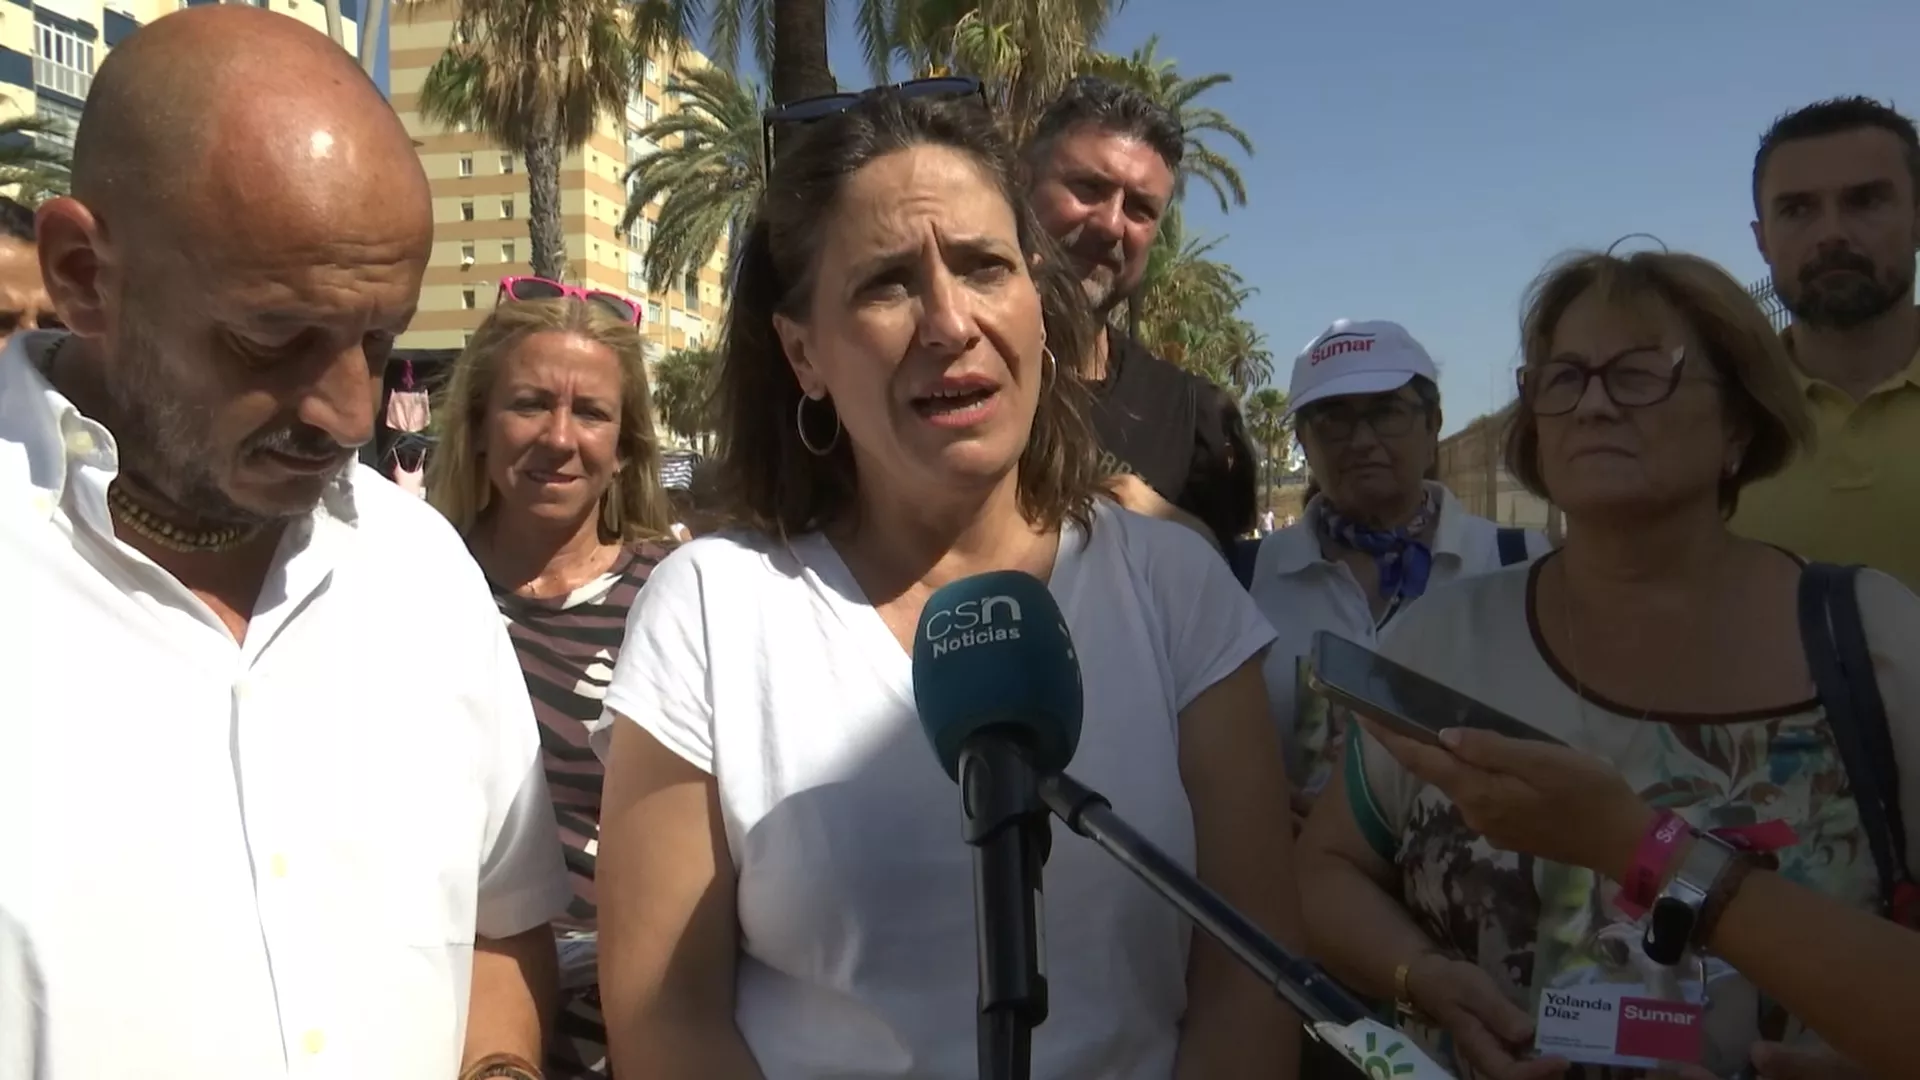 La candidata al Congreso de Sumar Cádiz 